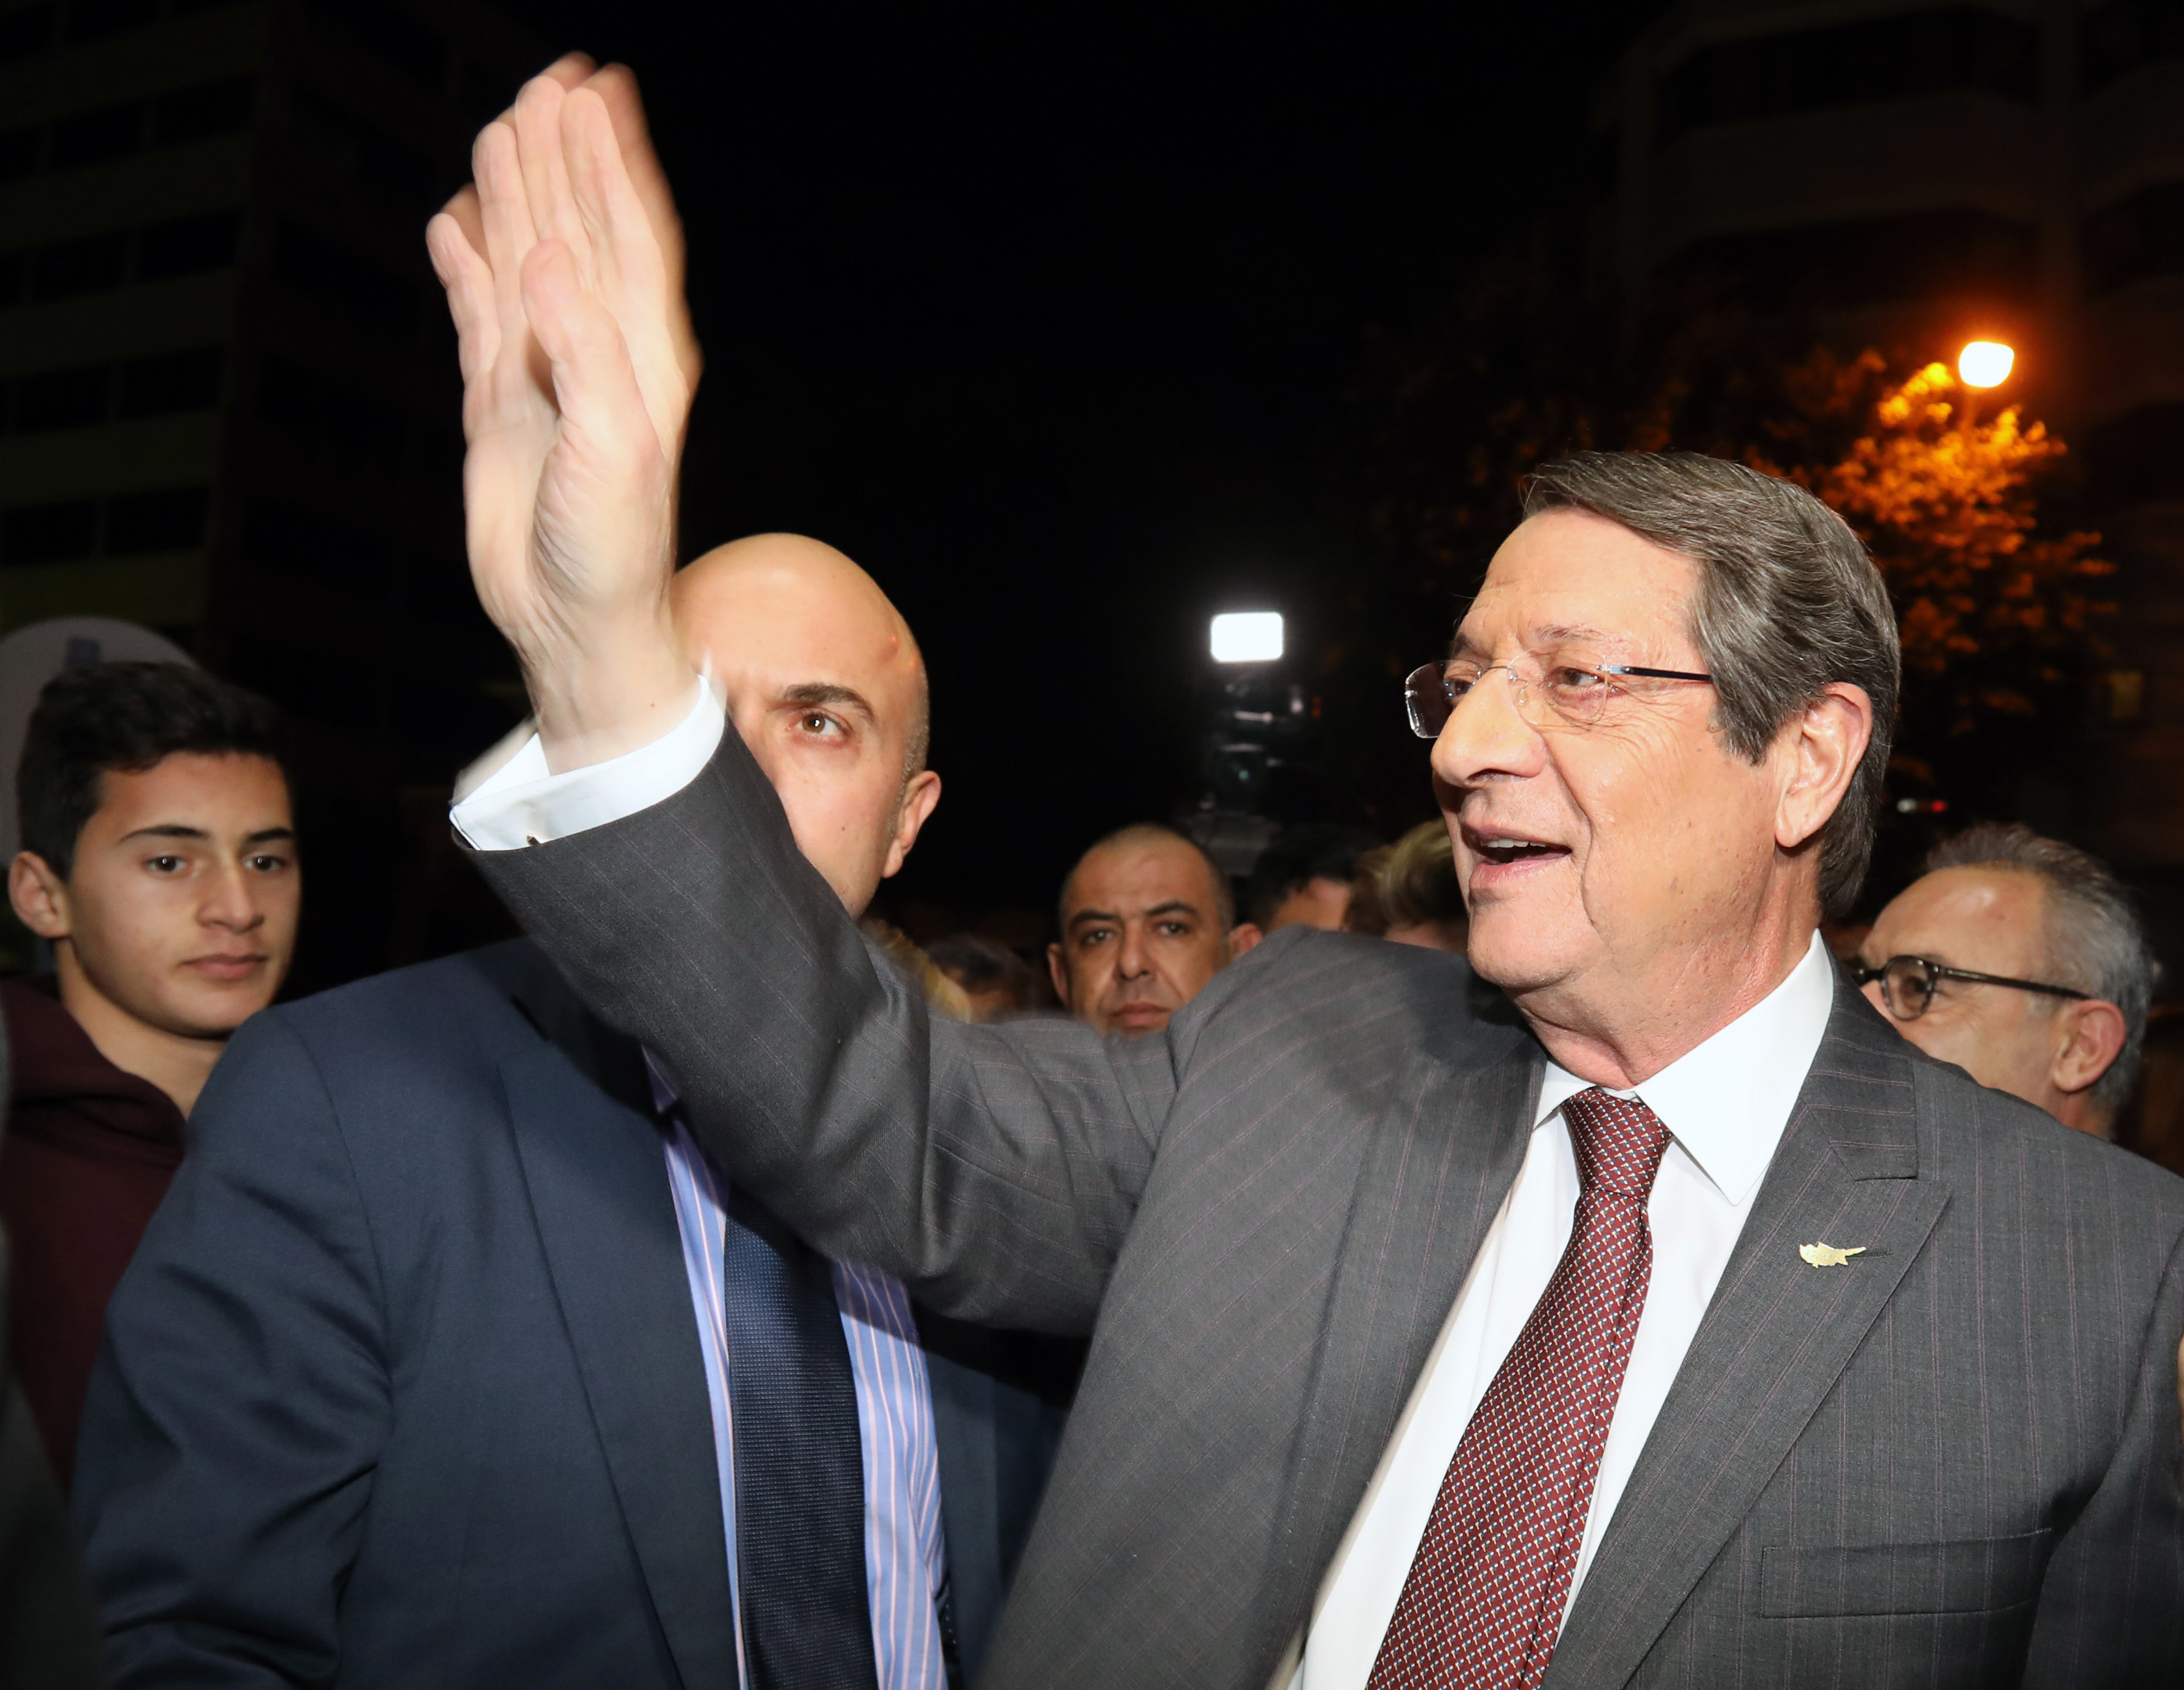 Κύπρος-εκλογές: Ο Δήμαρχος Λευκωσίας στηρίζει Νίκο Αναστασιάδη